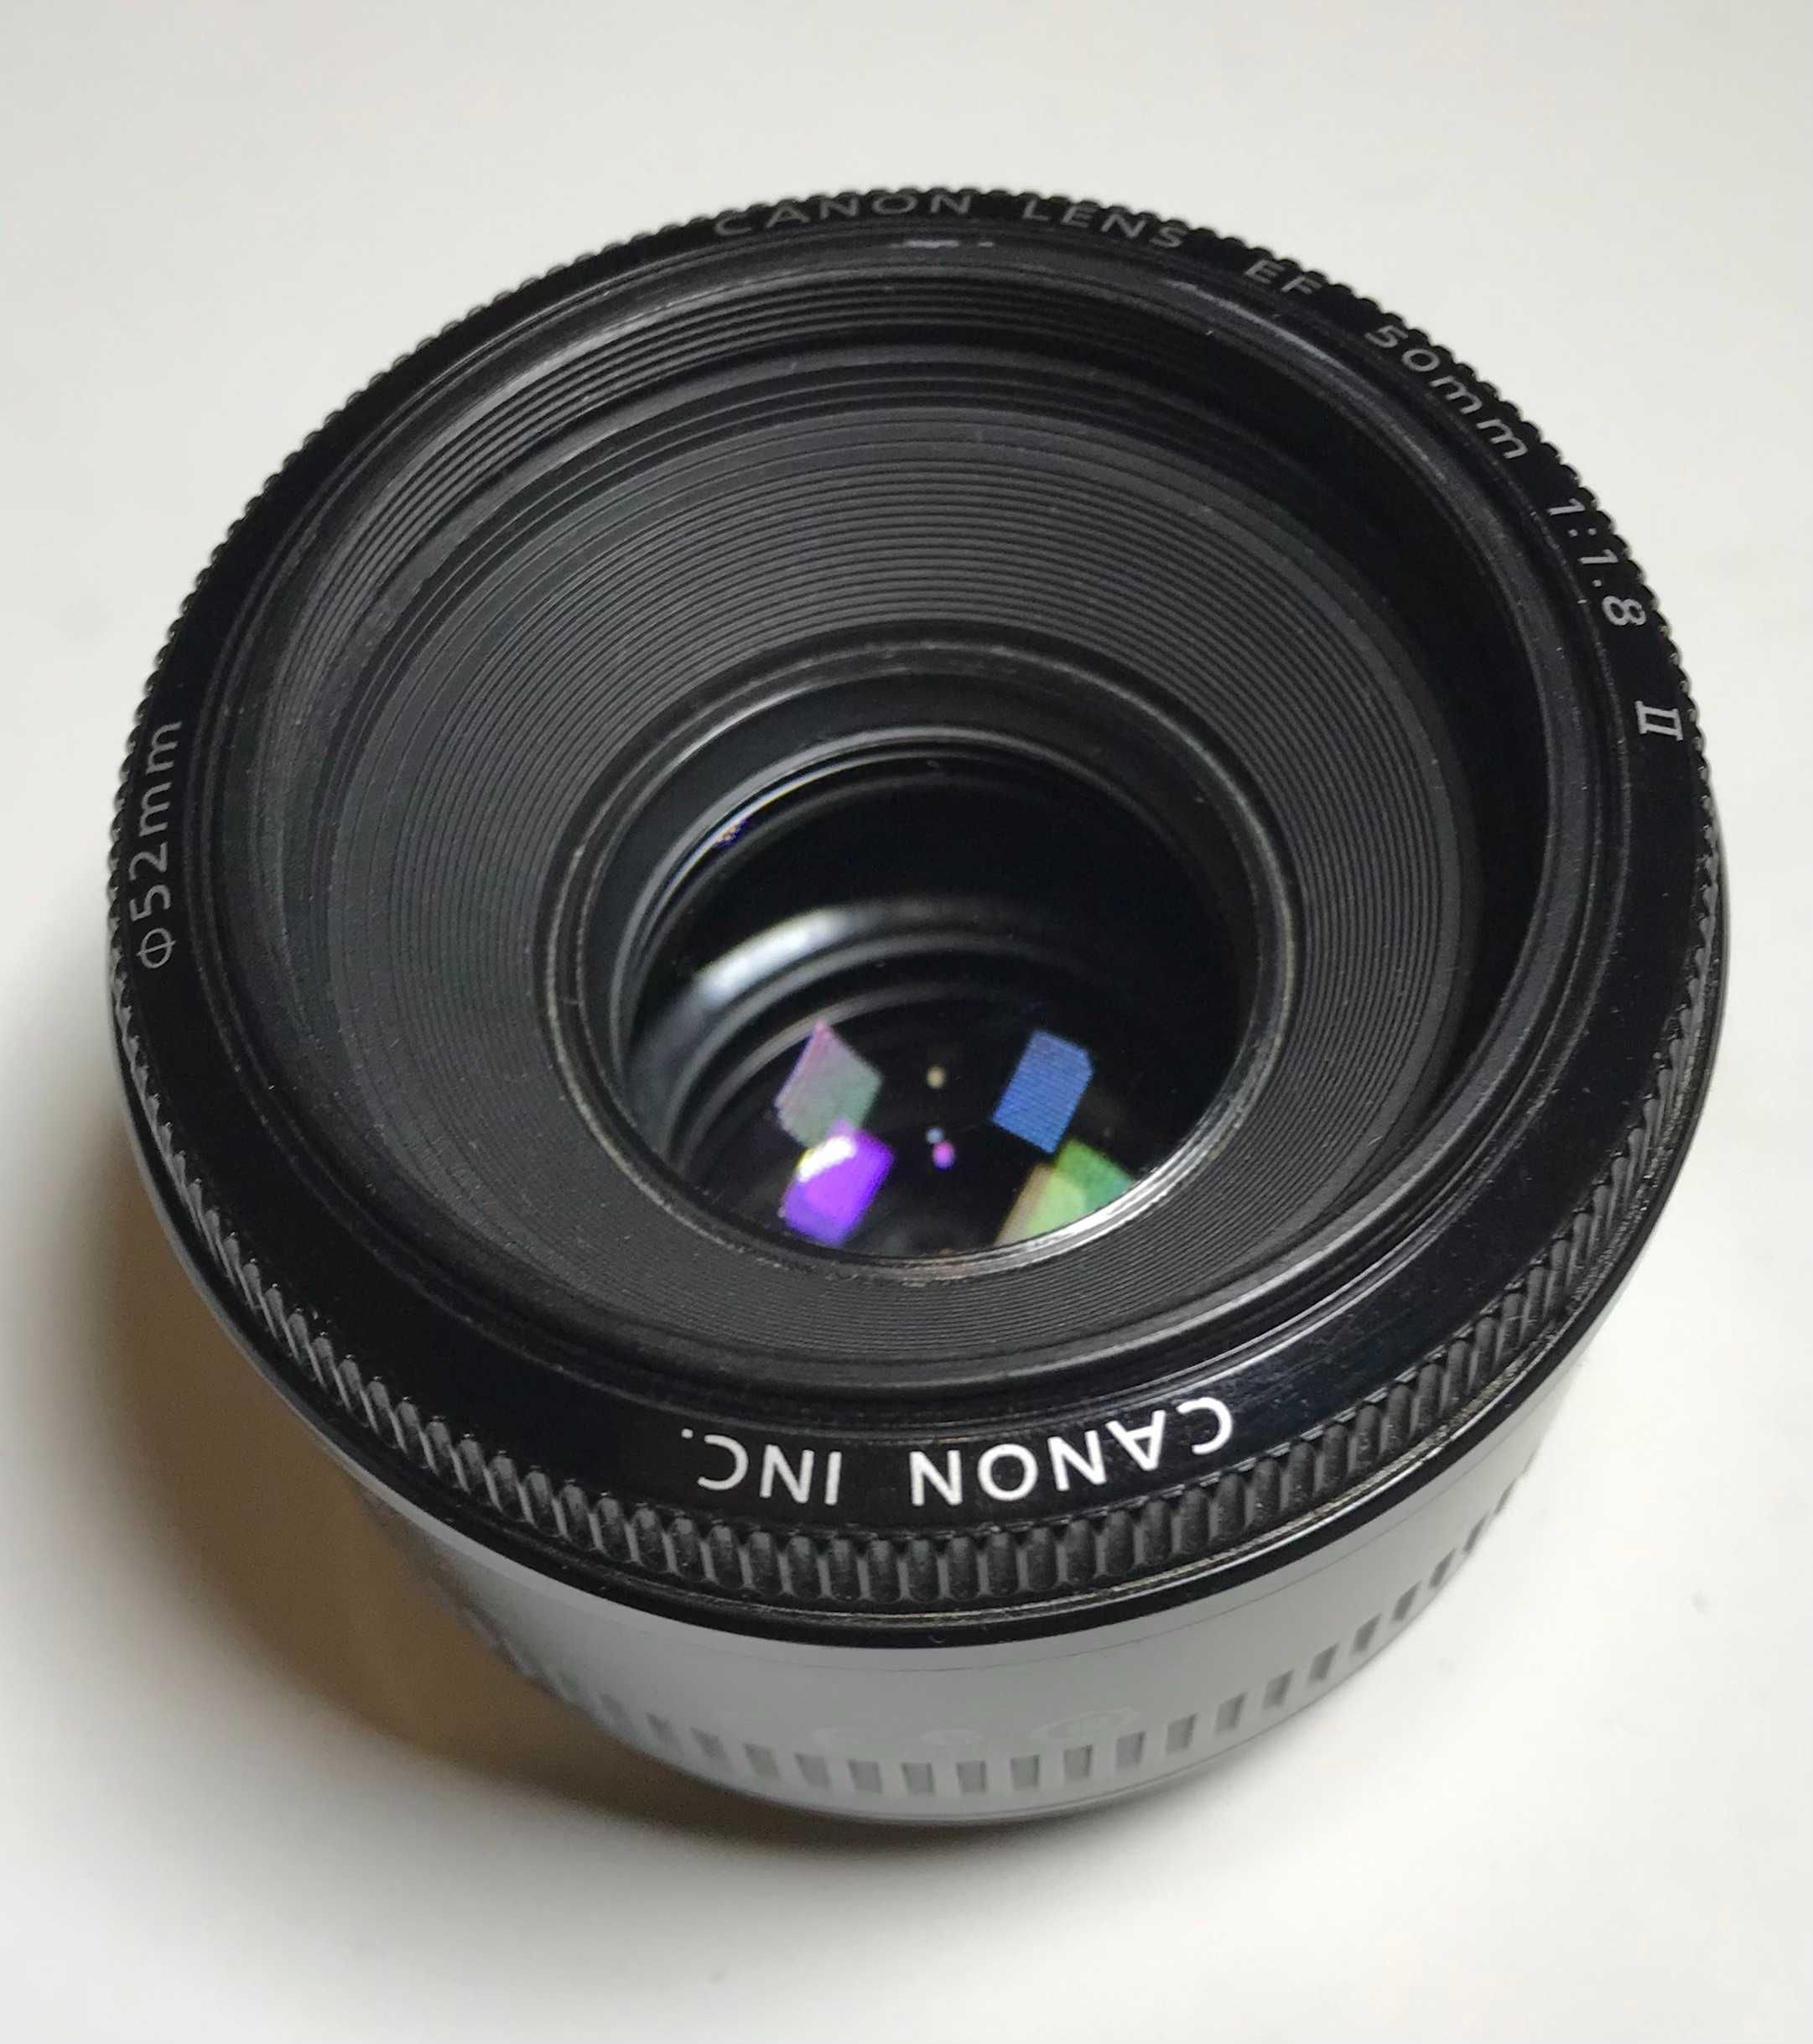 Портретный объектив Canon EF 50 mm f/1.8 II Б/У